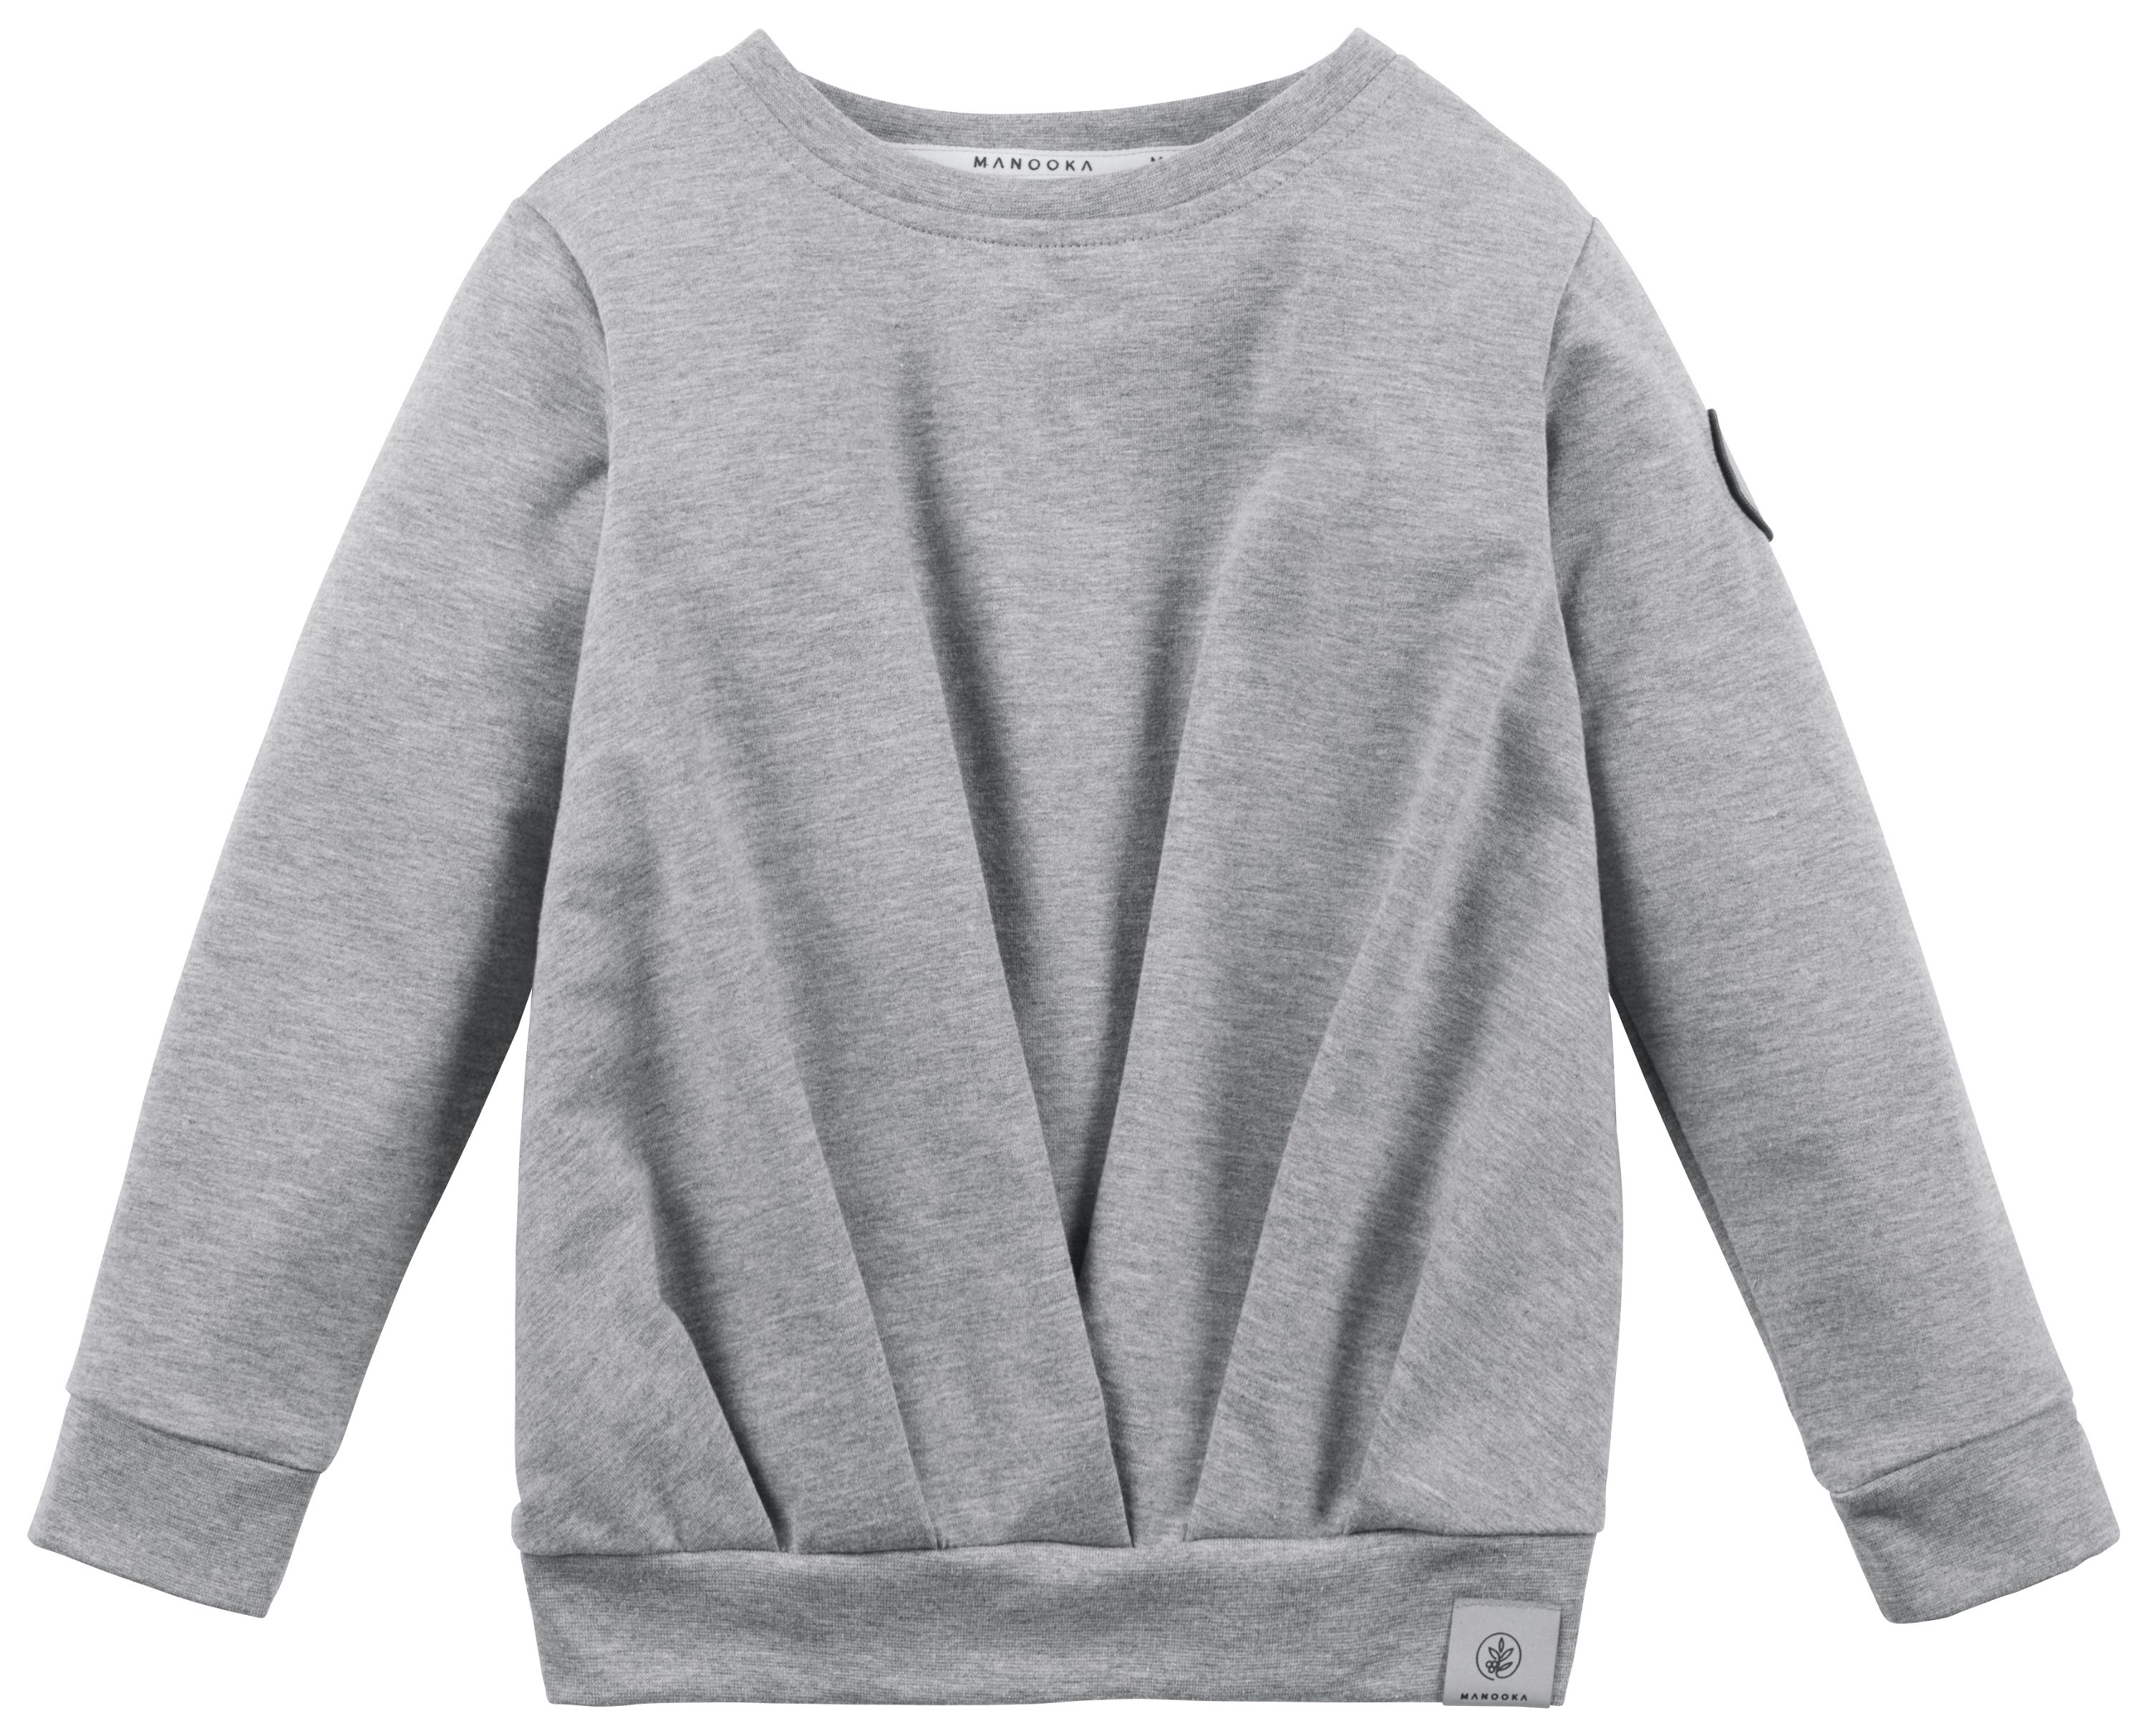 Ein graues FancyFriday-Sweatshirt